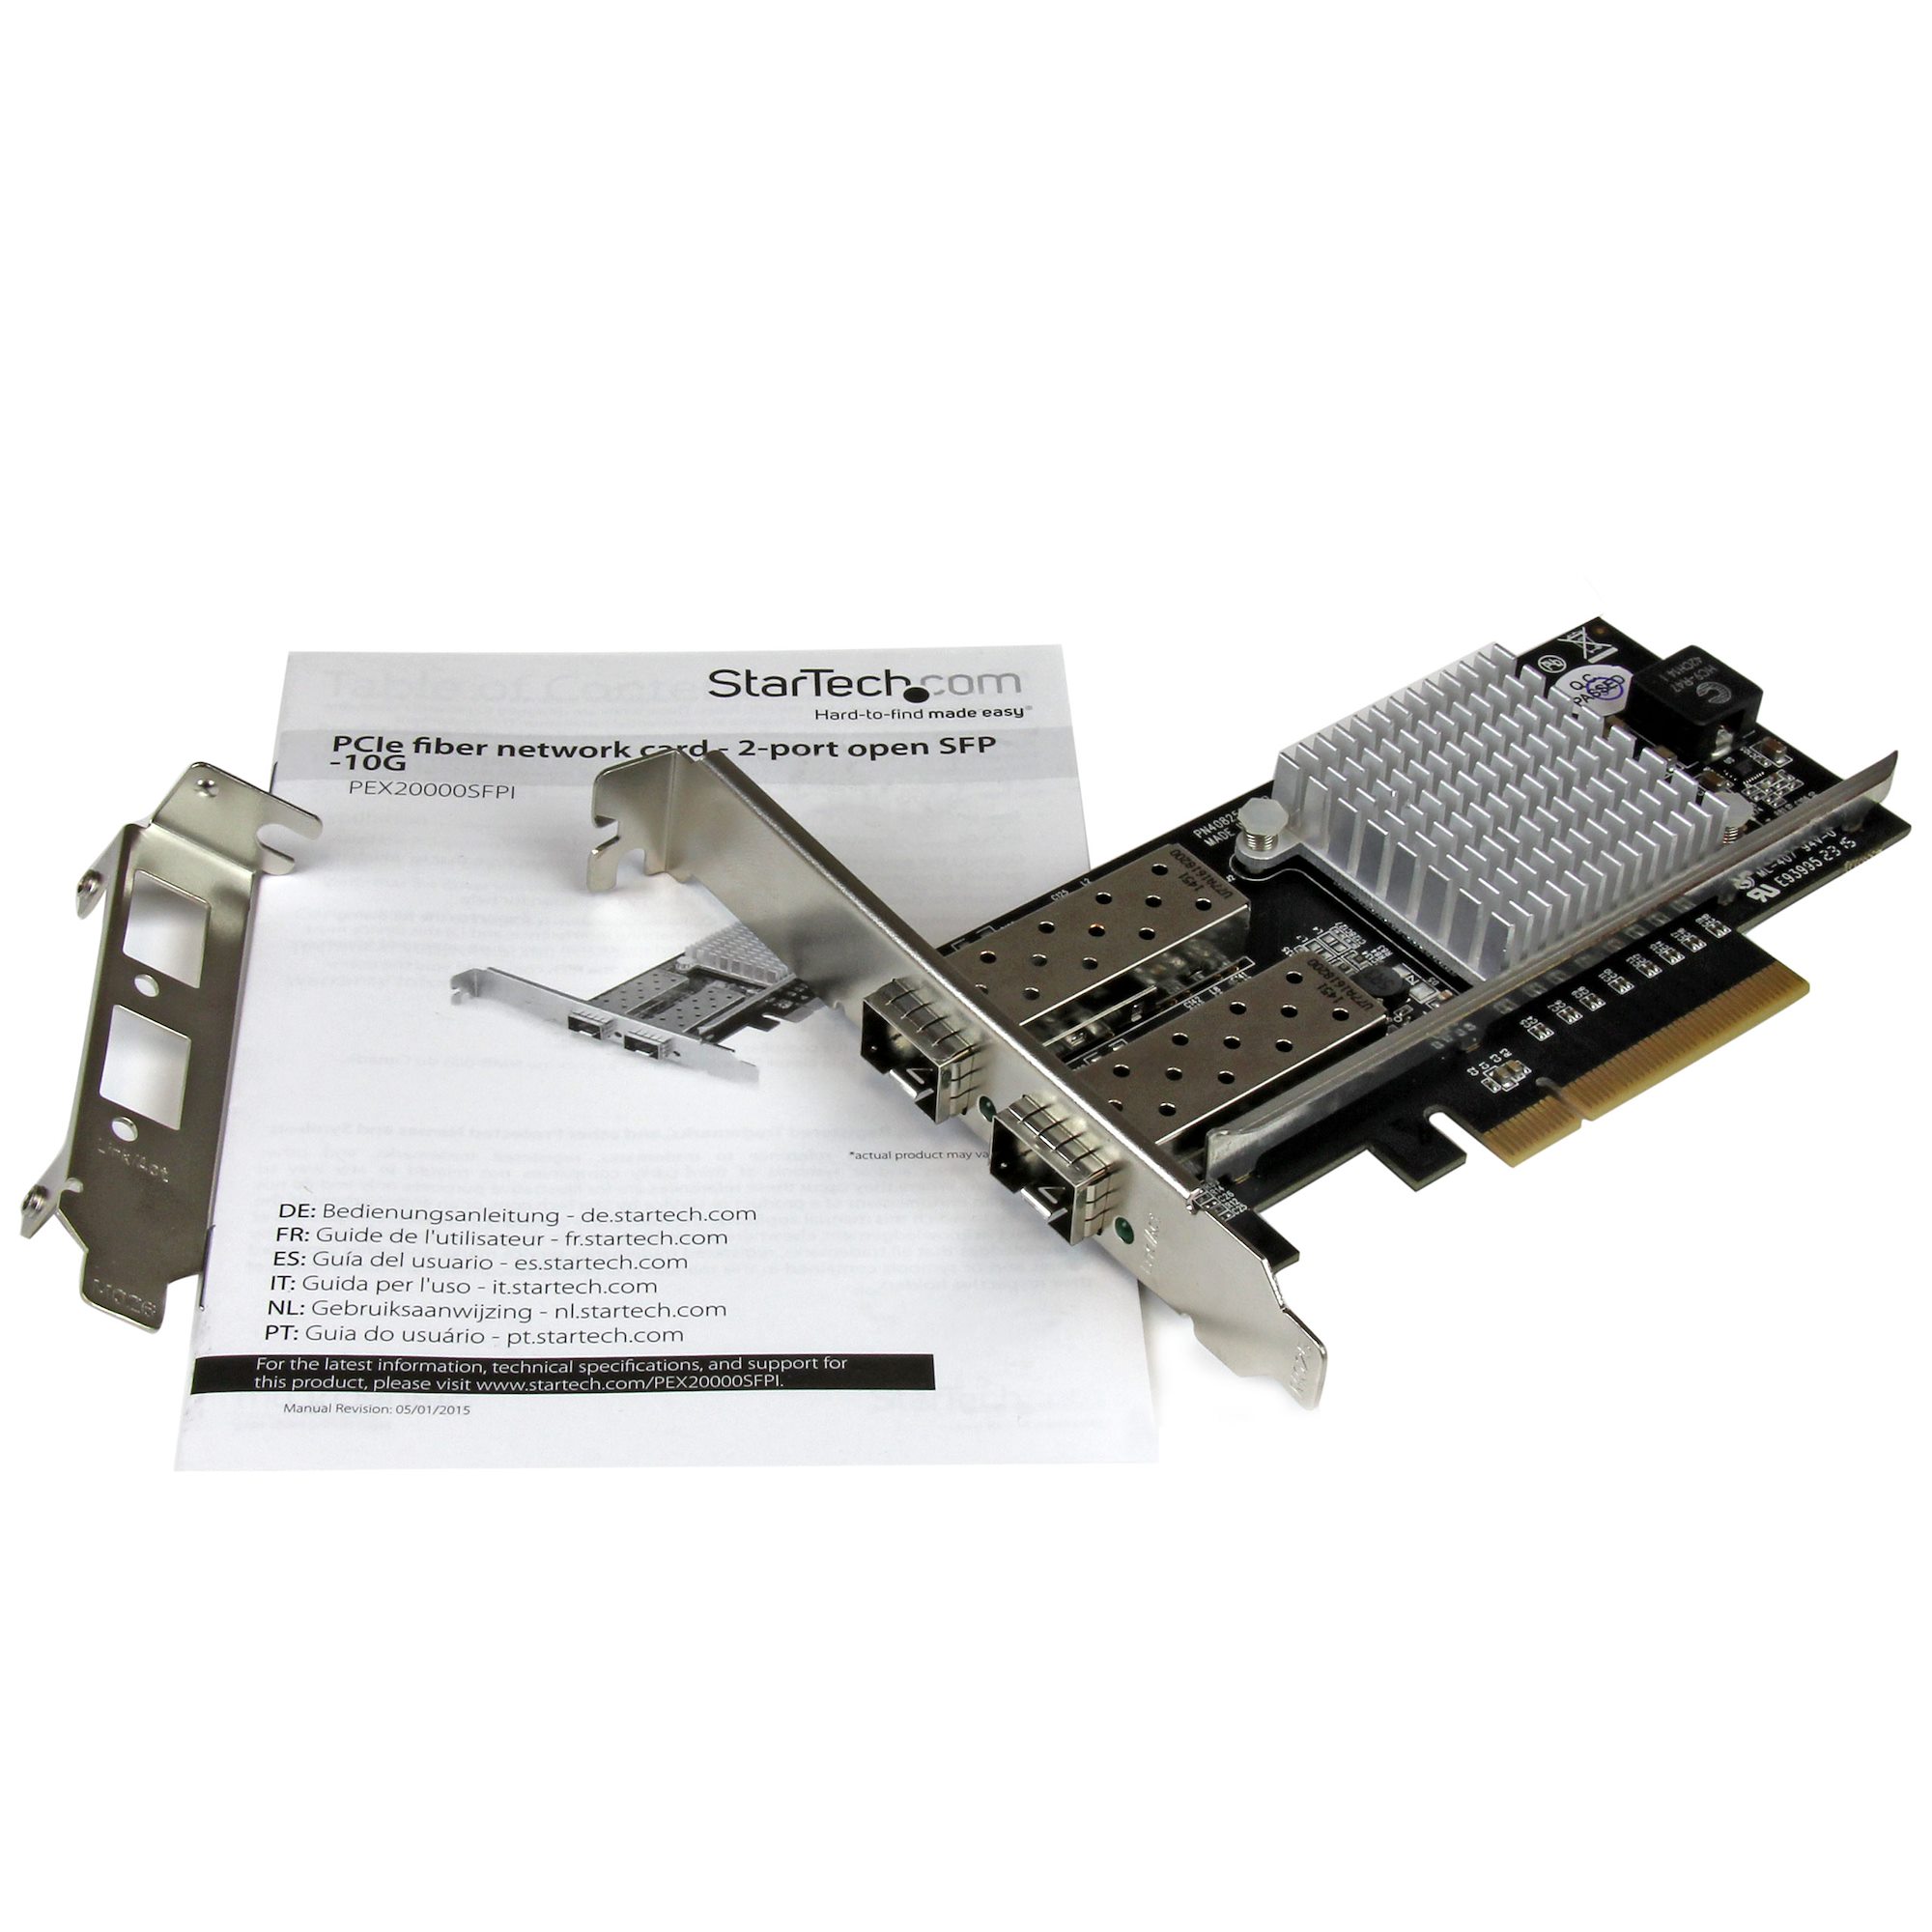 高質で安価 StarTech.com PEX10000SRI 1ポート10ギガSFP 増設PCI